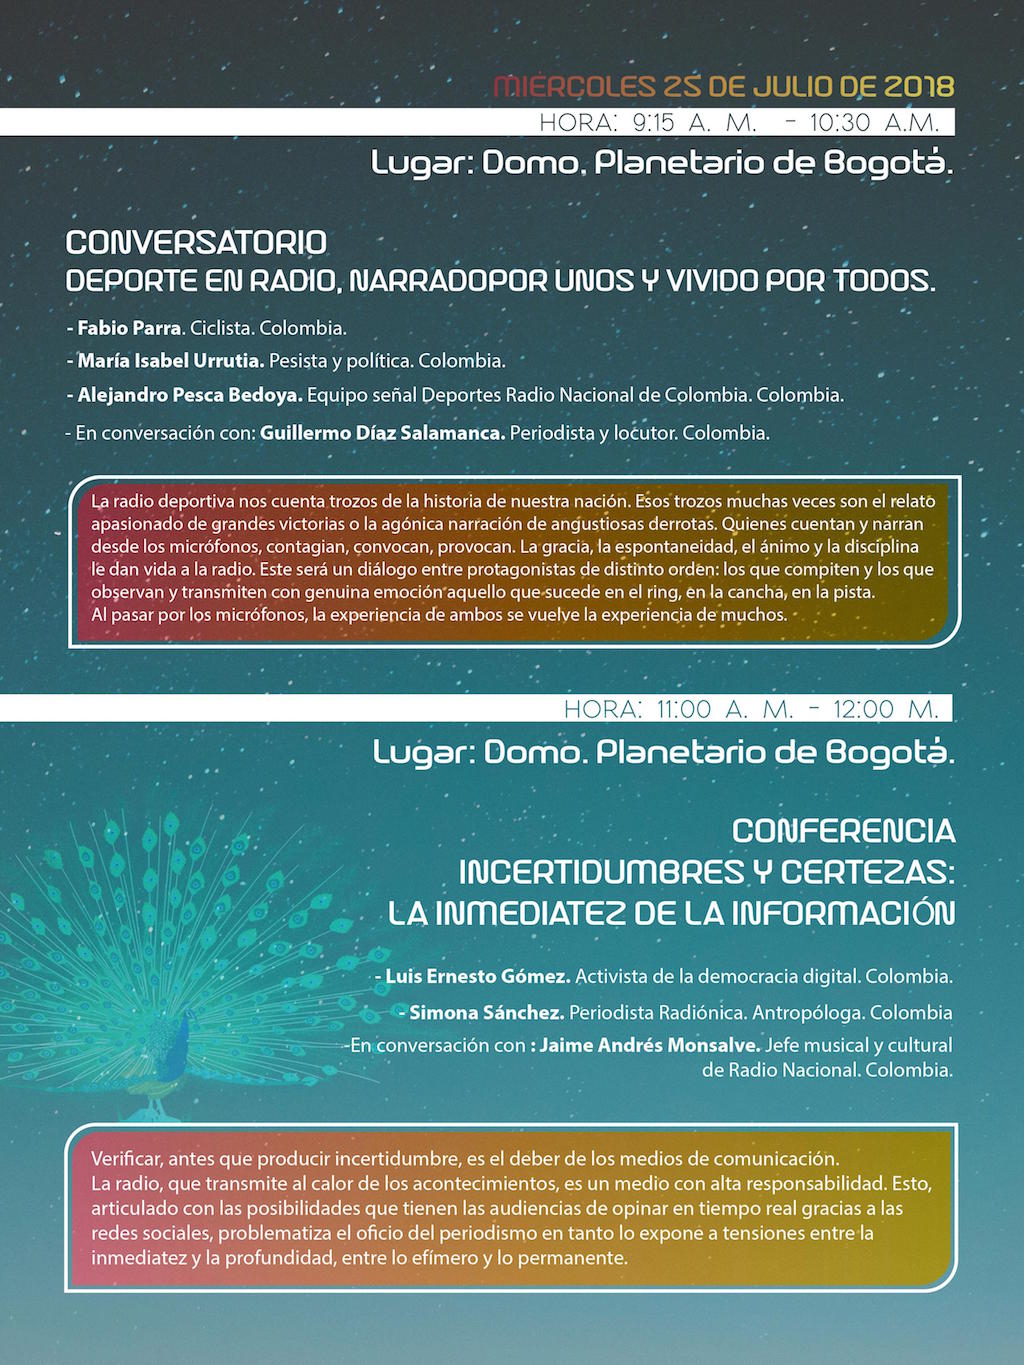 Agenda, programación y talleres de la 12ª Bienal Internacional de Radio de Bogotá